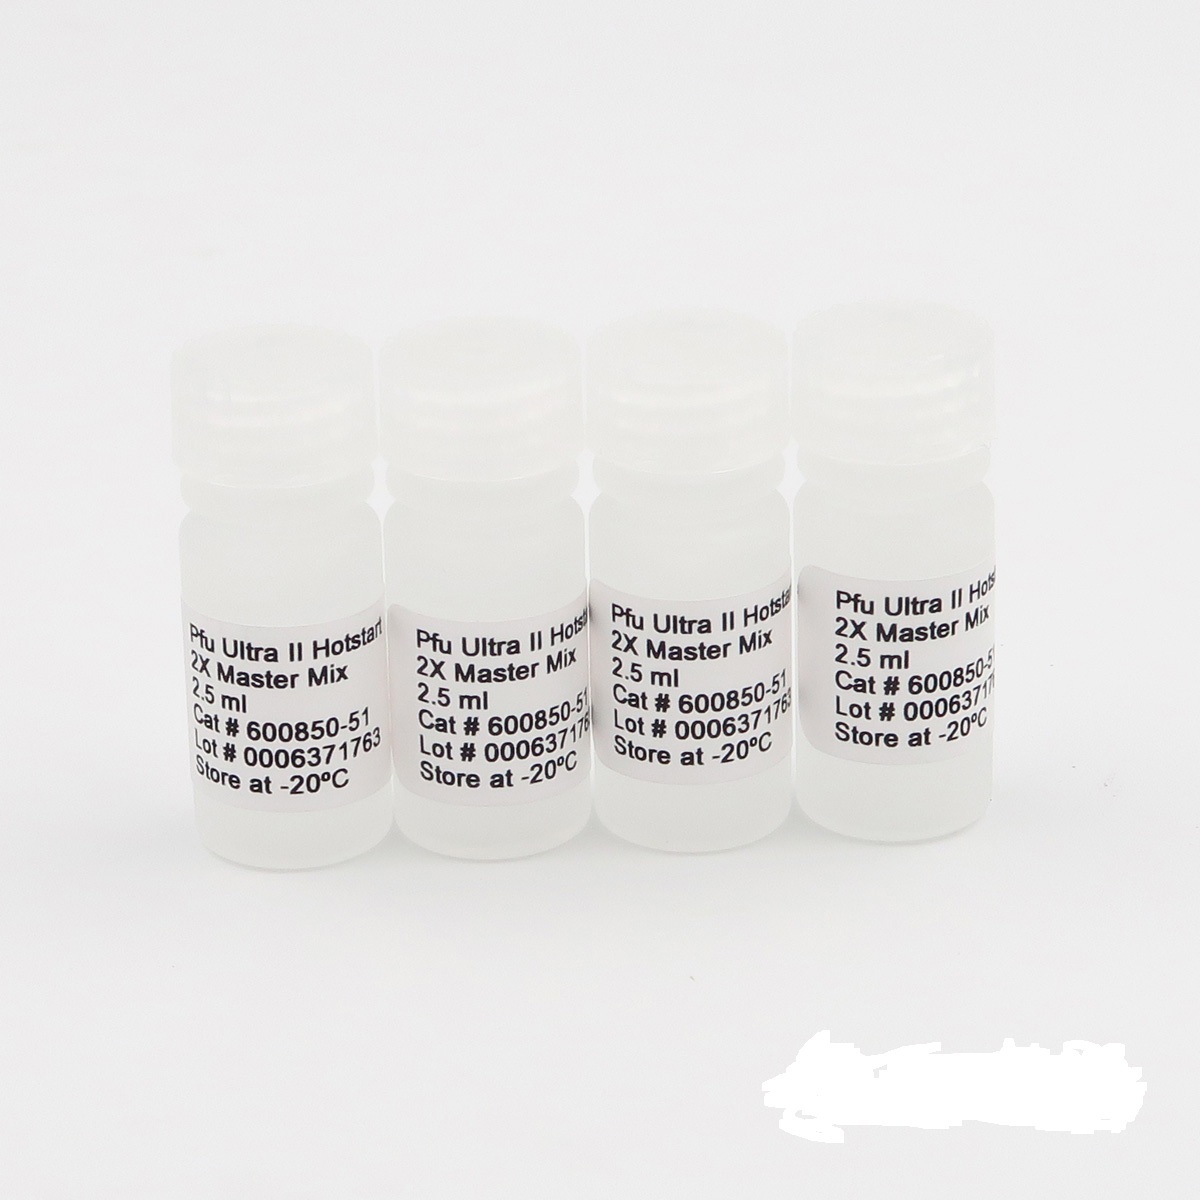 天花病毒染料法荧光定量PCR试剂盒